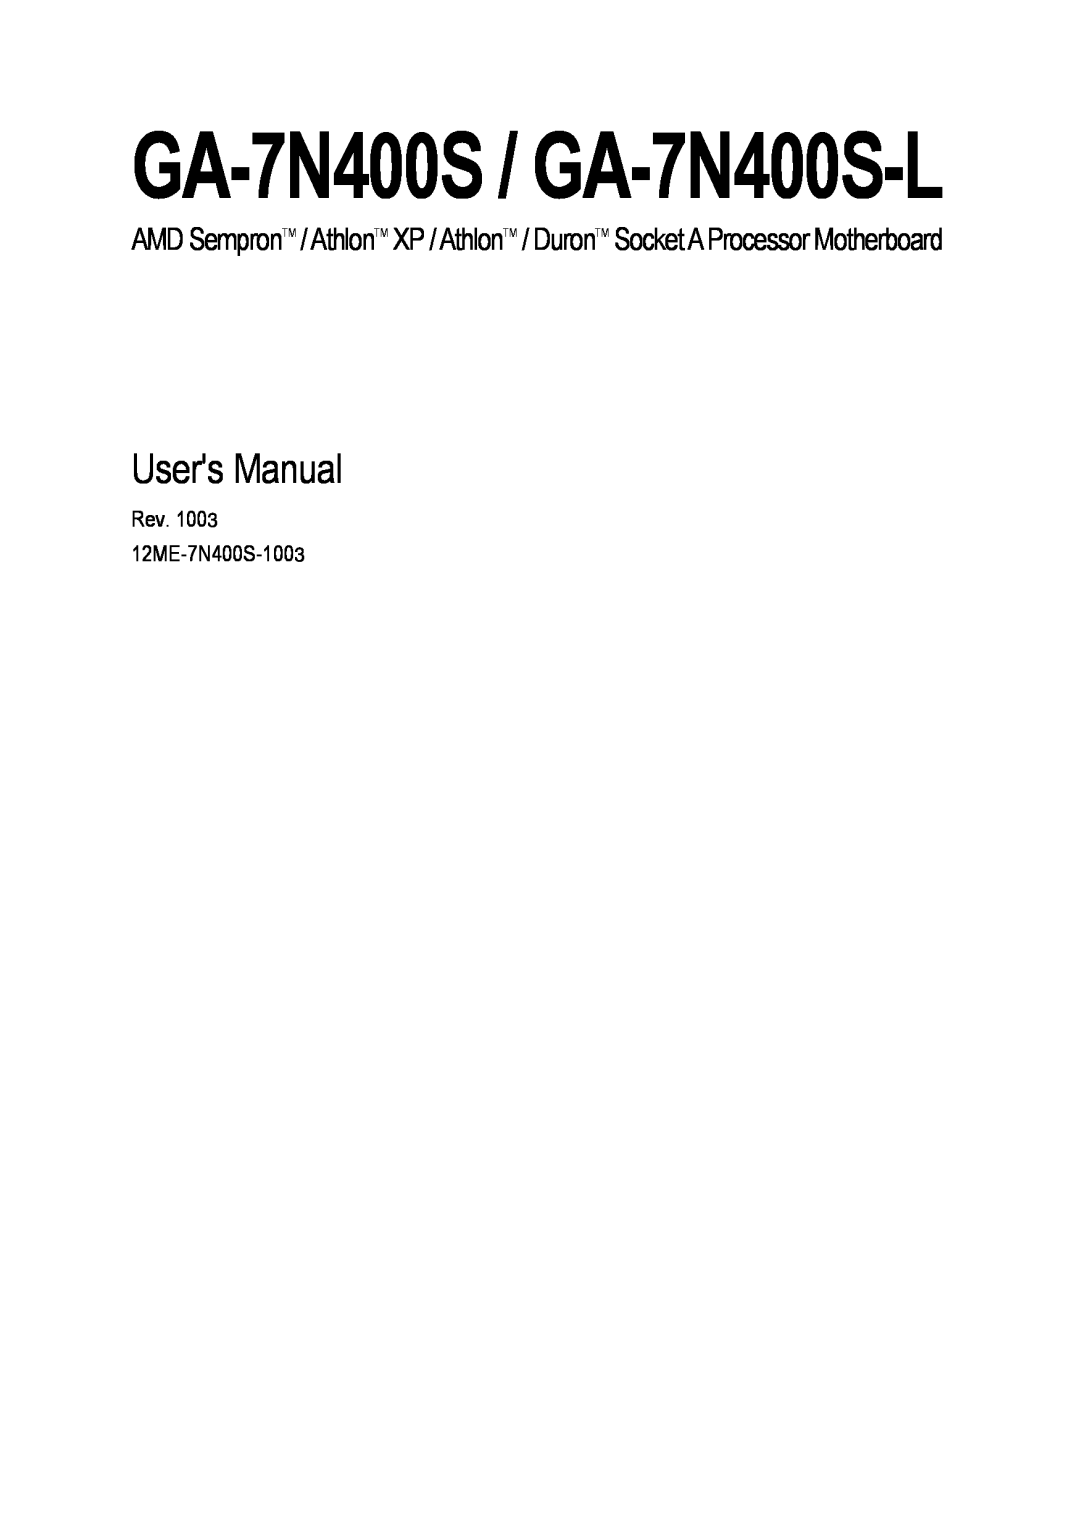 Gigabyte user manual GA-7N400S / GA-7N400S-L, Users Manual, Rev. 1003 12ME-7N400S-1003 